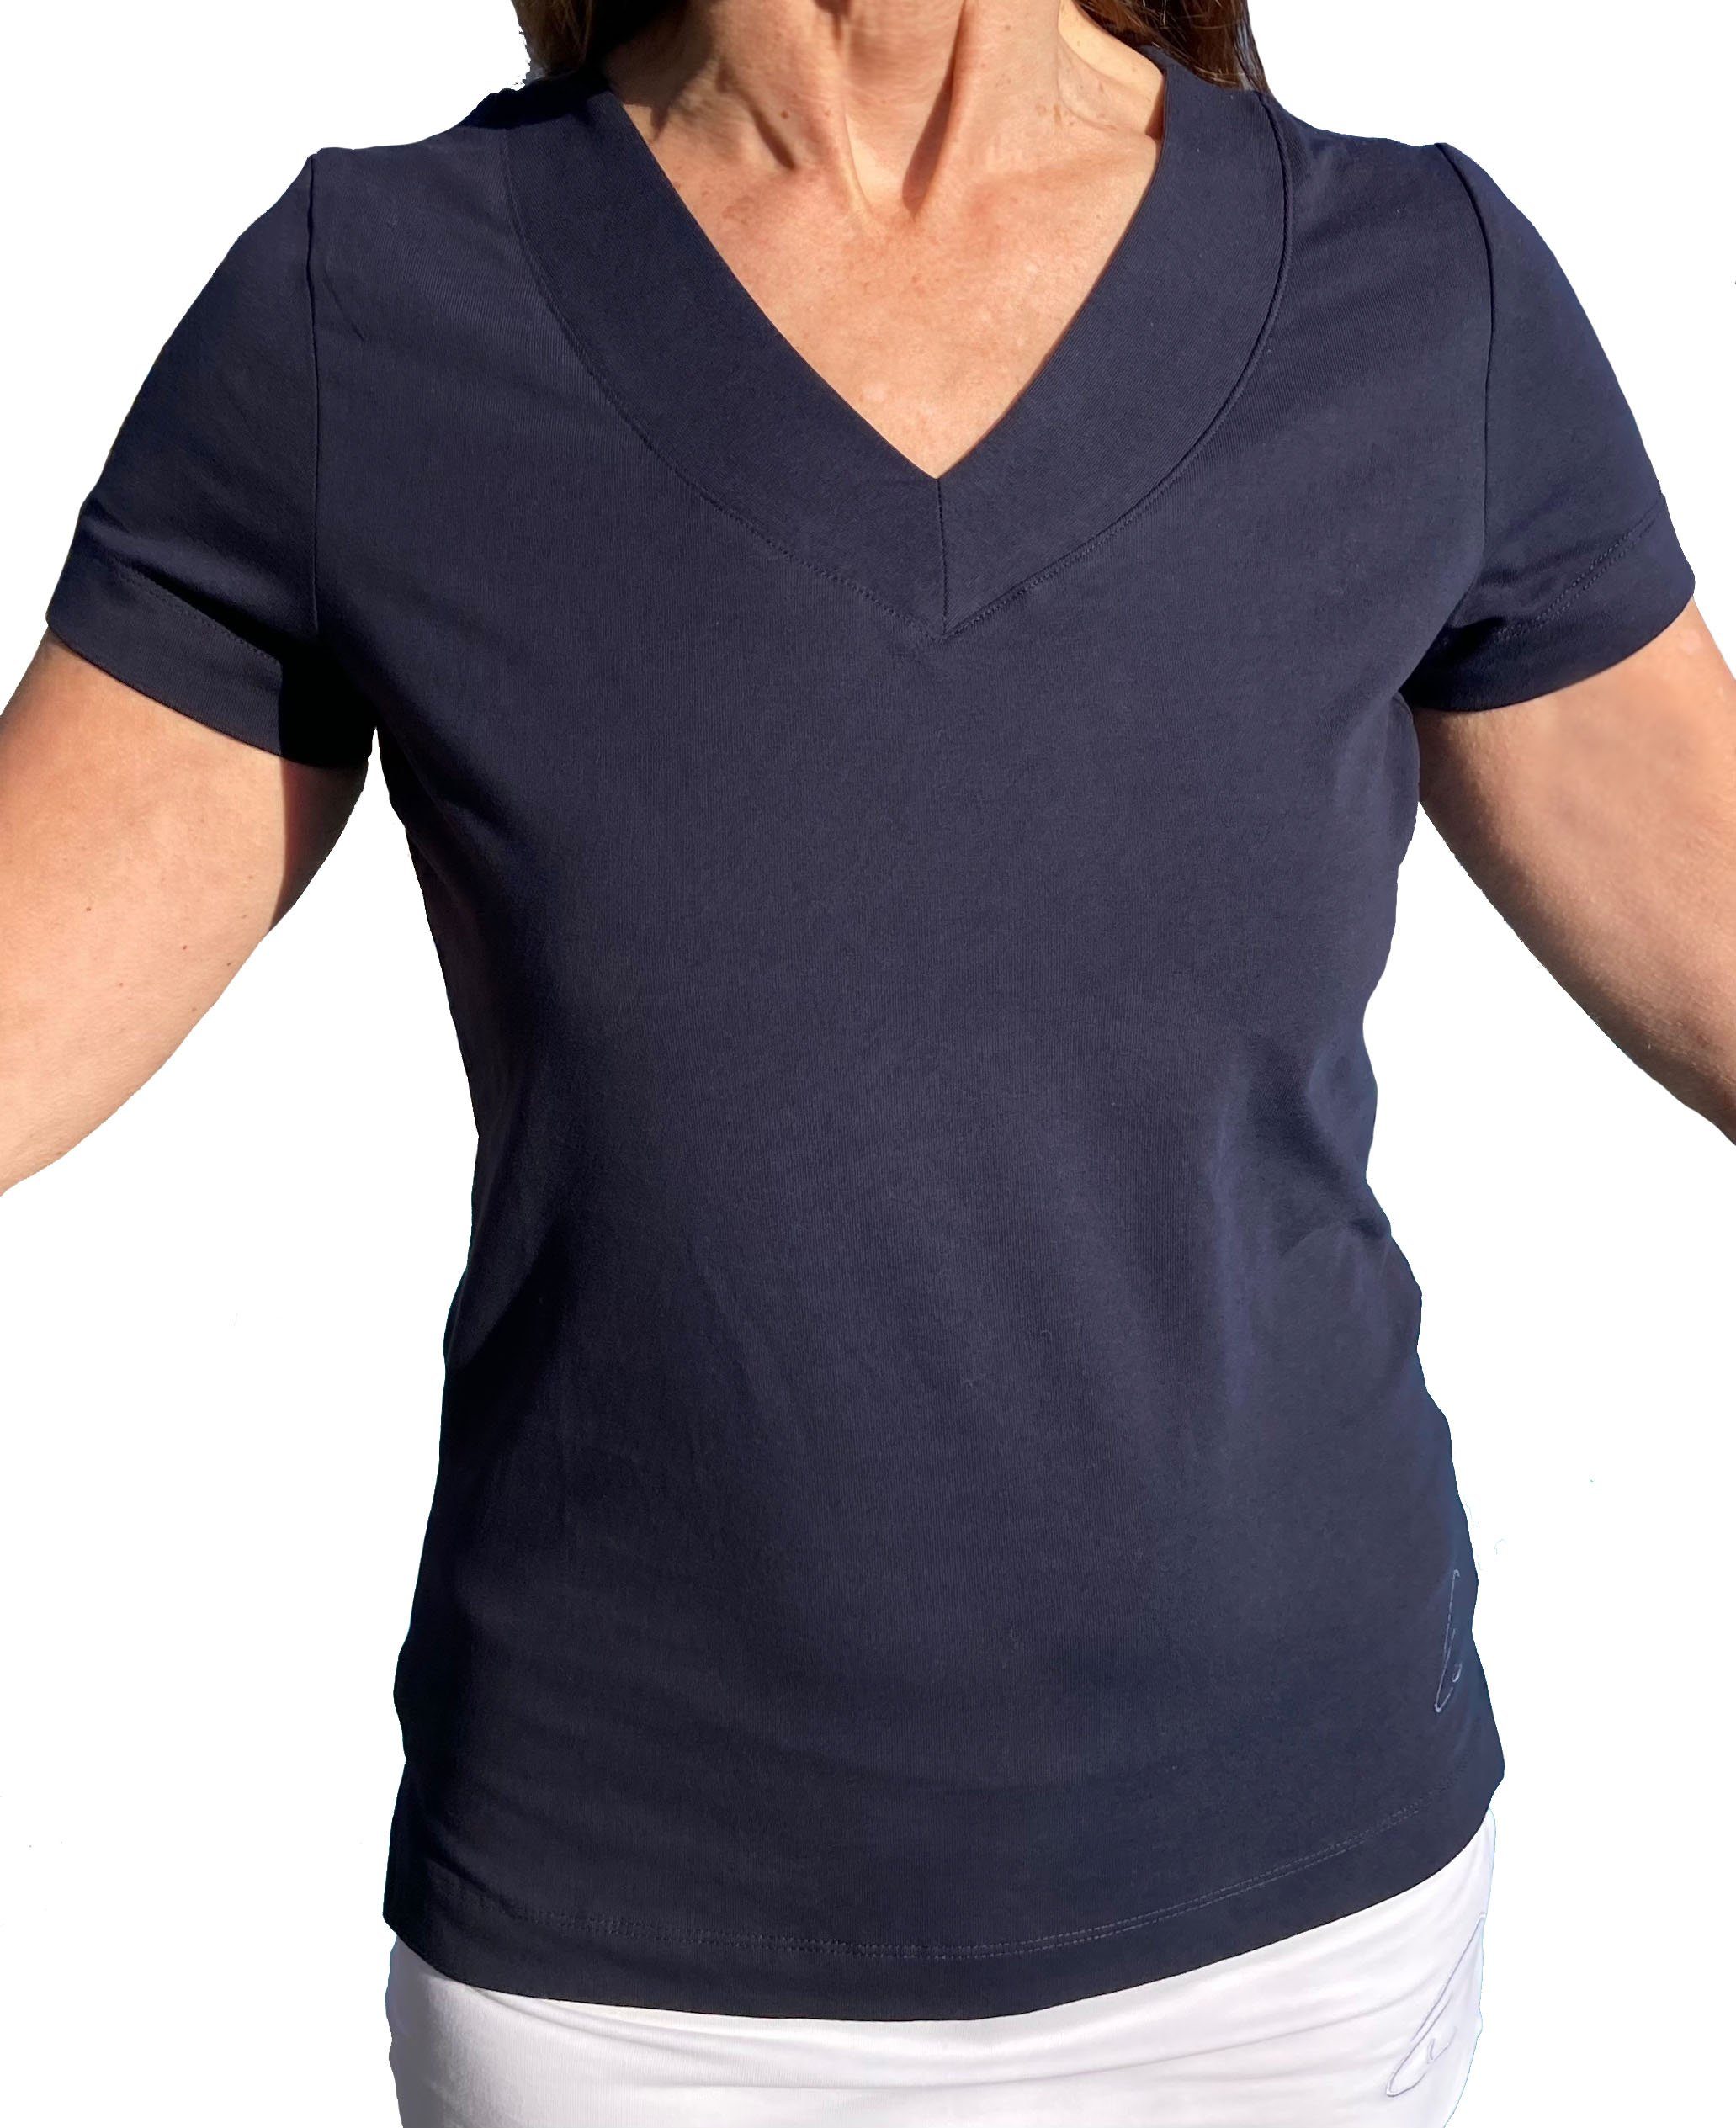 Farishta Yoga in Nachtblau V-Shirt V-Shirt geschlitzt Bio-Baumwolle ESPARTO mit kurzen Ärmeln, Yogashirt unten